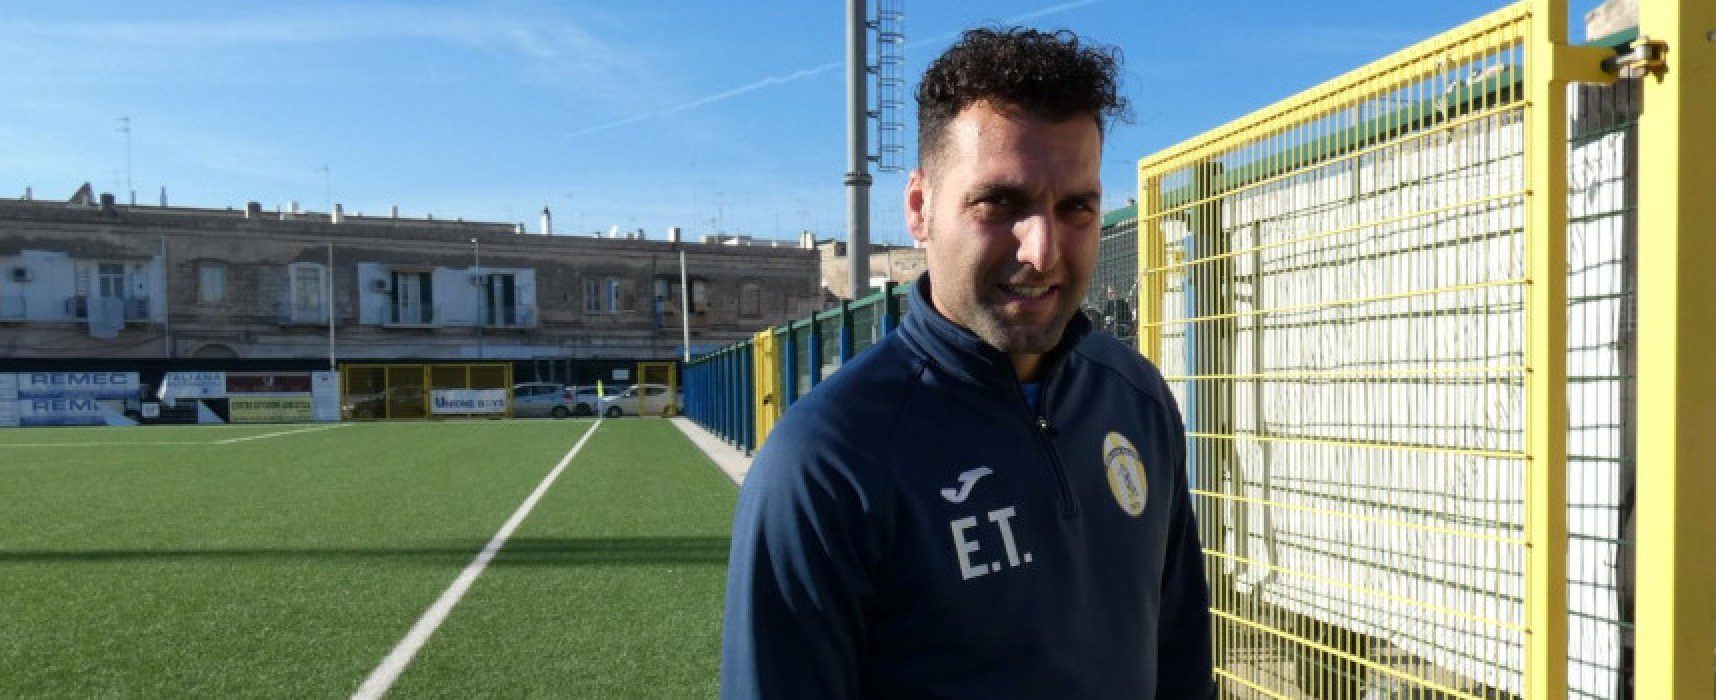 Il Don Uva Calcio lavora a casa, Emanuele Troilo: “Ora partita più importante da vincere”